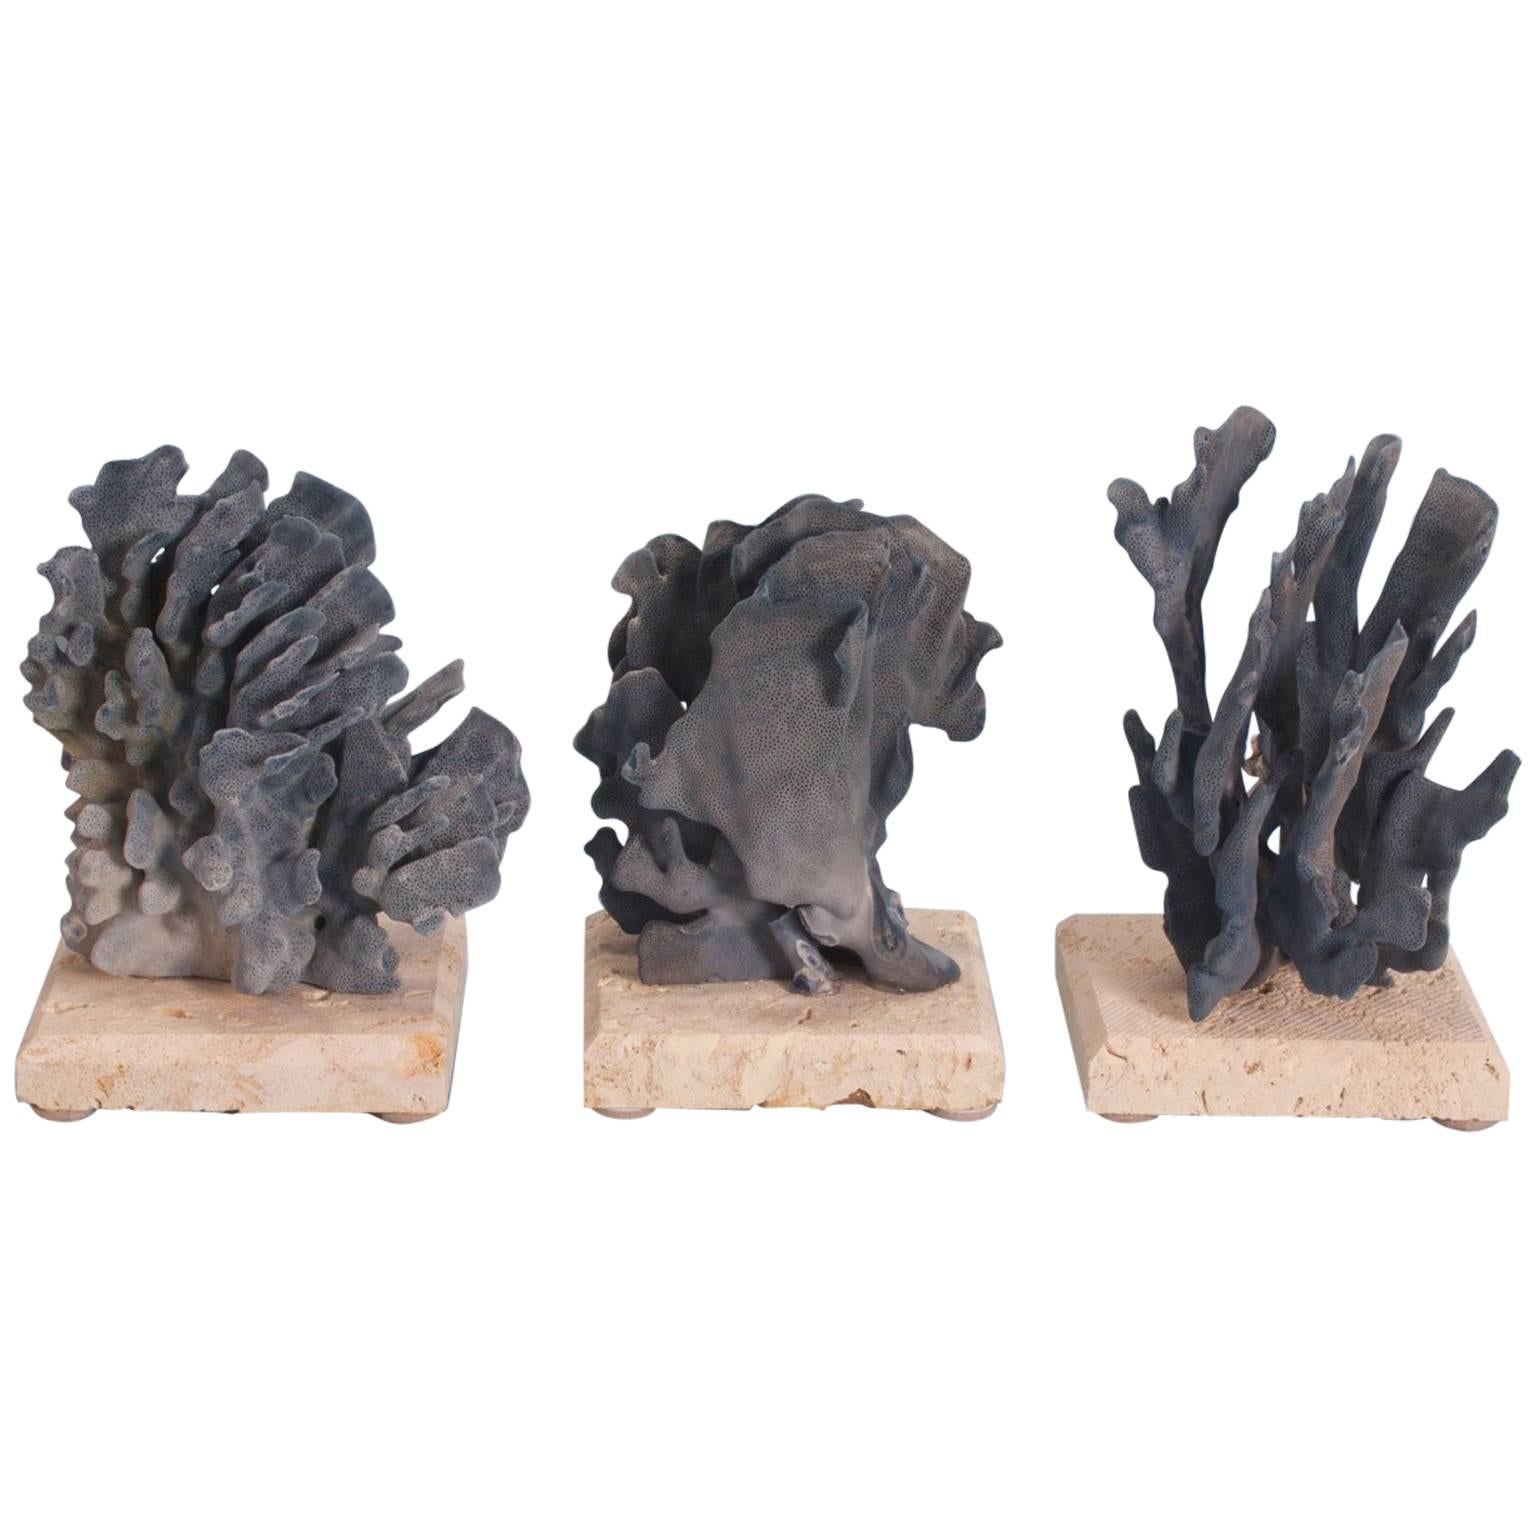 Drei inspirierende organische Skulpturen aus blauer Koralle, einzeln preislich im Angebot